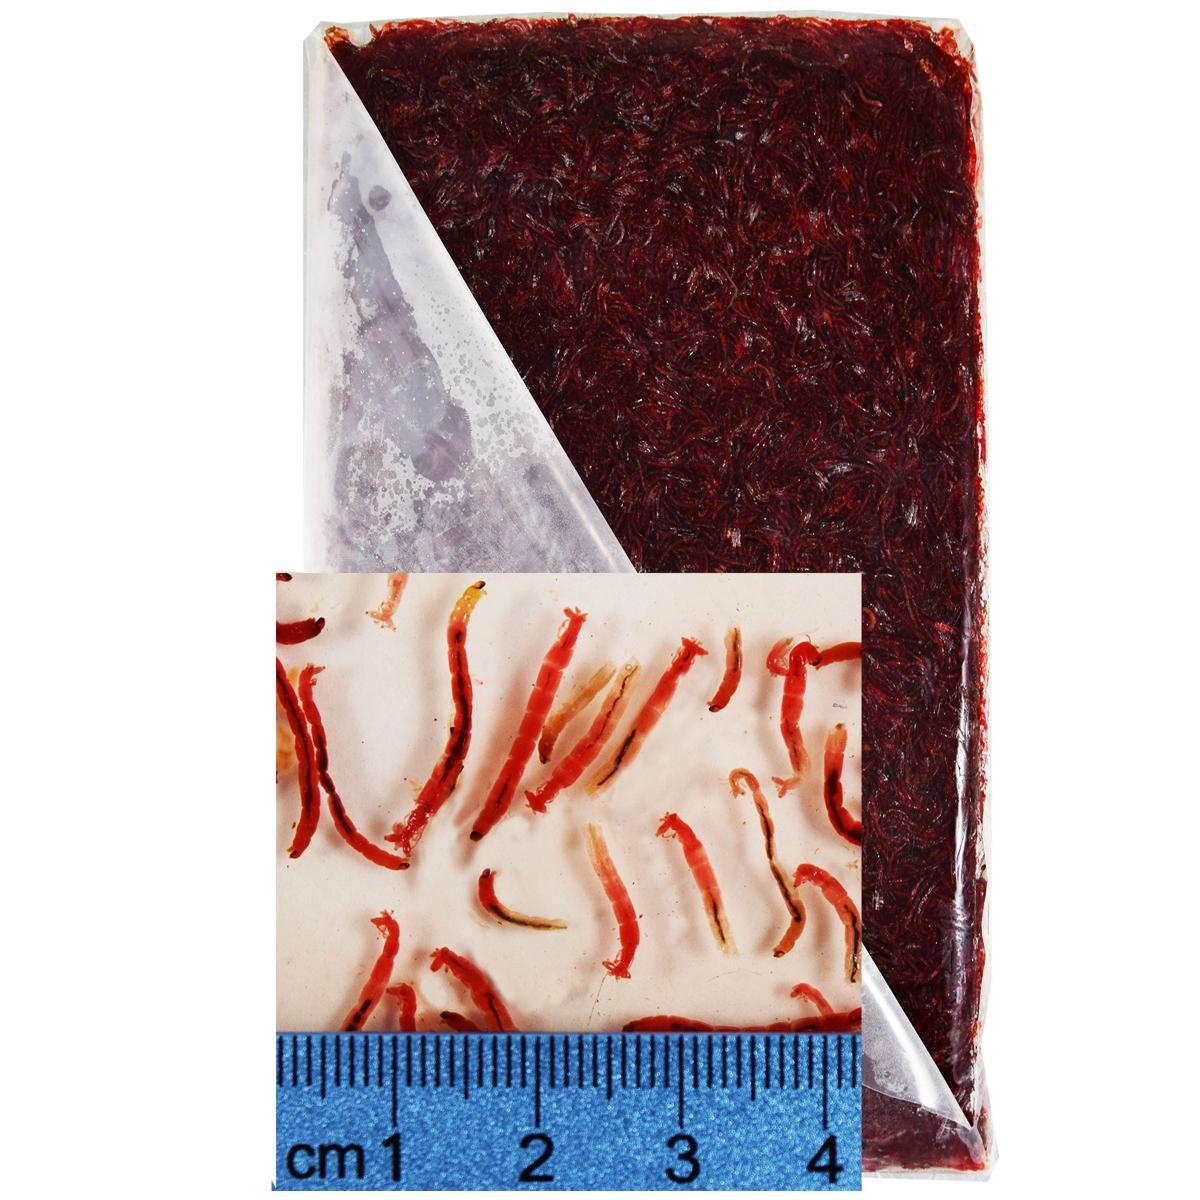 https://www.brineshrimpdirect.com/wp-images/product/image/BloodwormFlat02.jpg